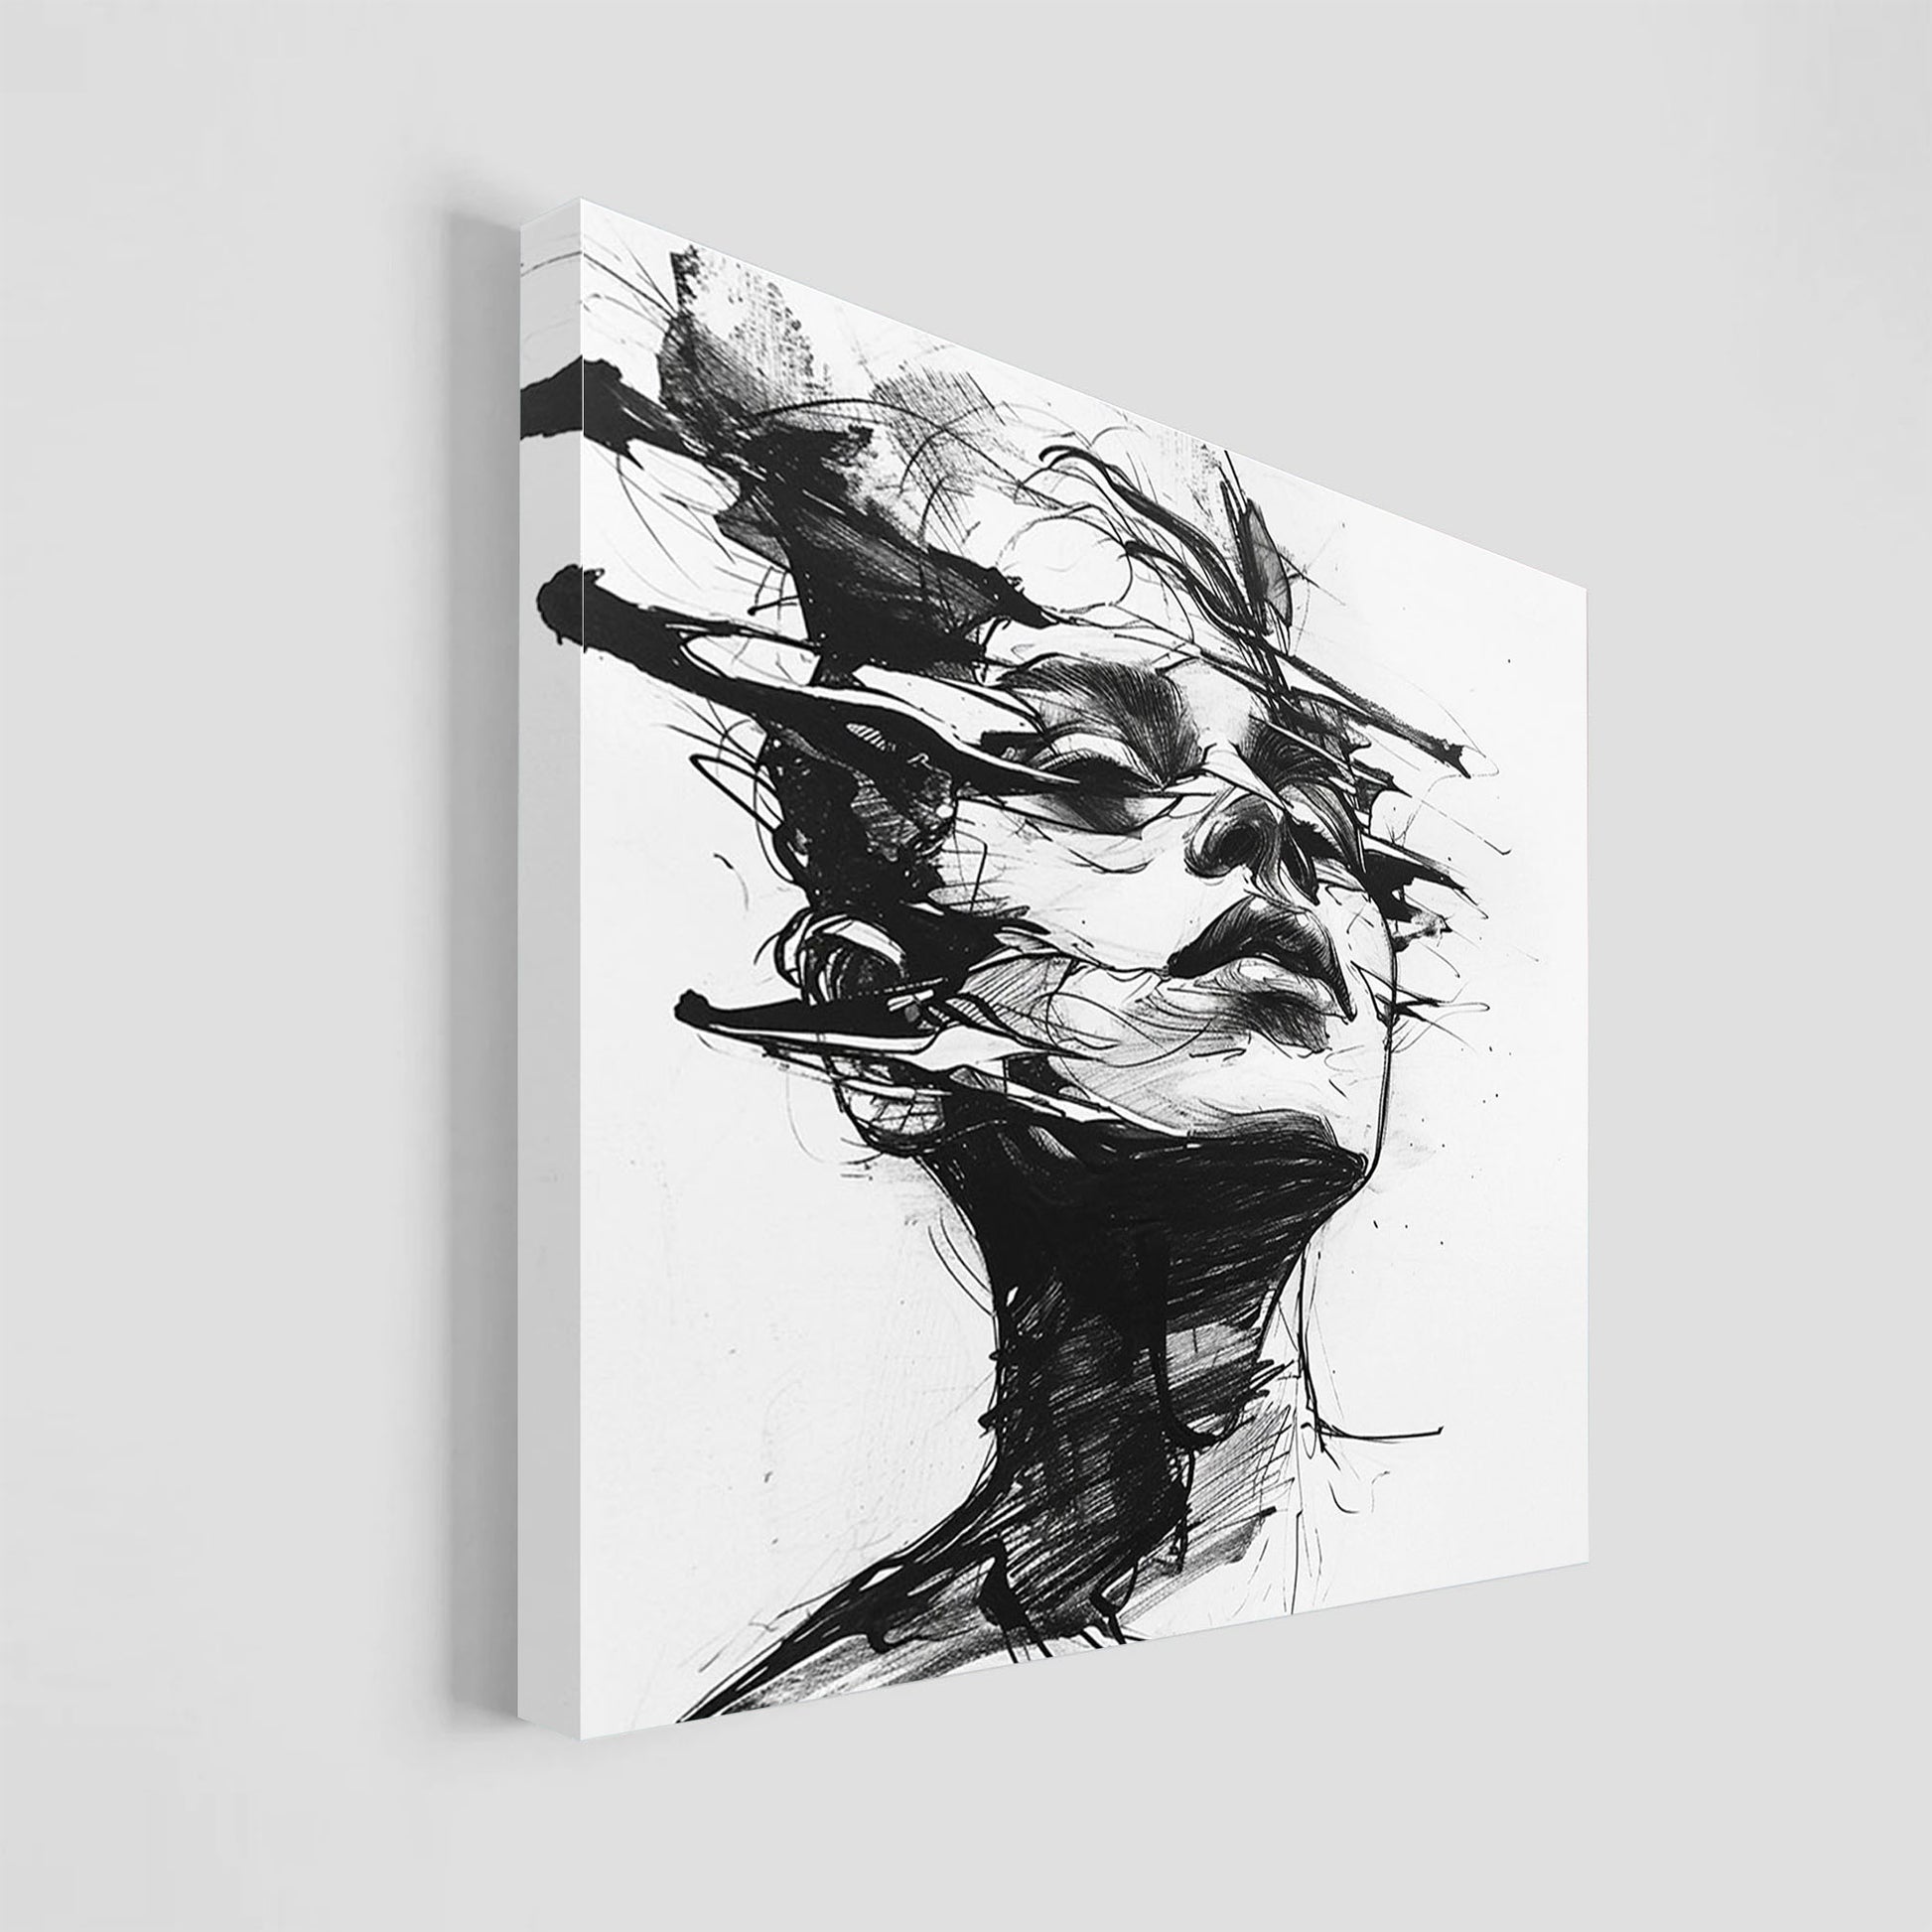 Ilustración en blanco y negro de un rostro humano rodeado por líneas dinámicas y abstractas, creando una sensación de movimiento